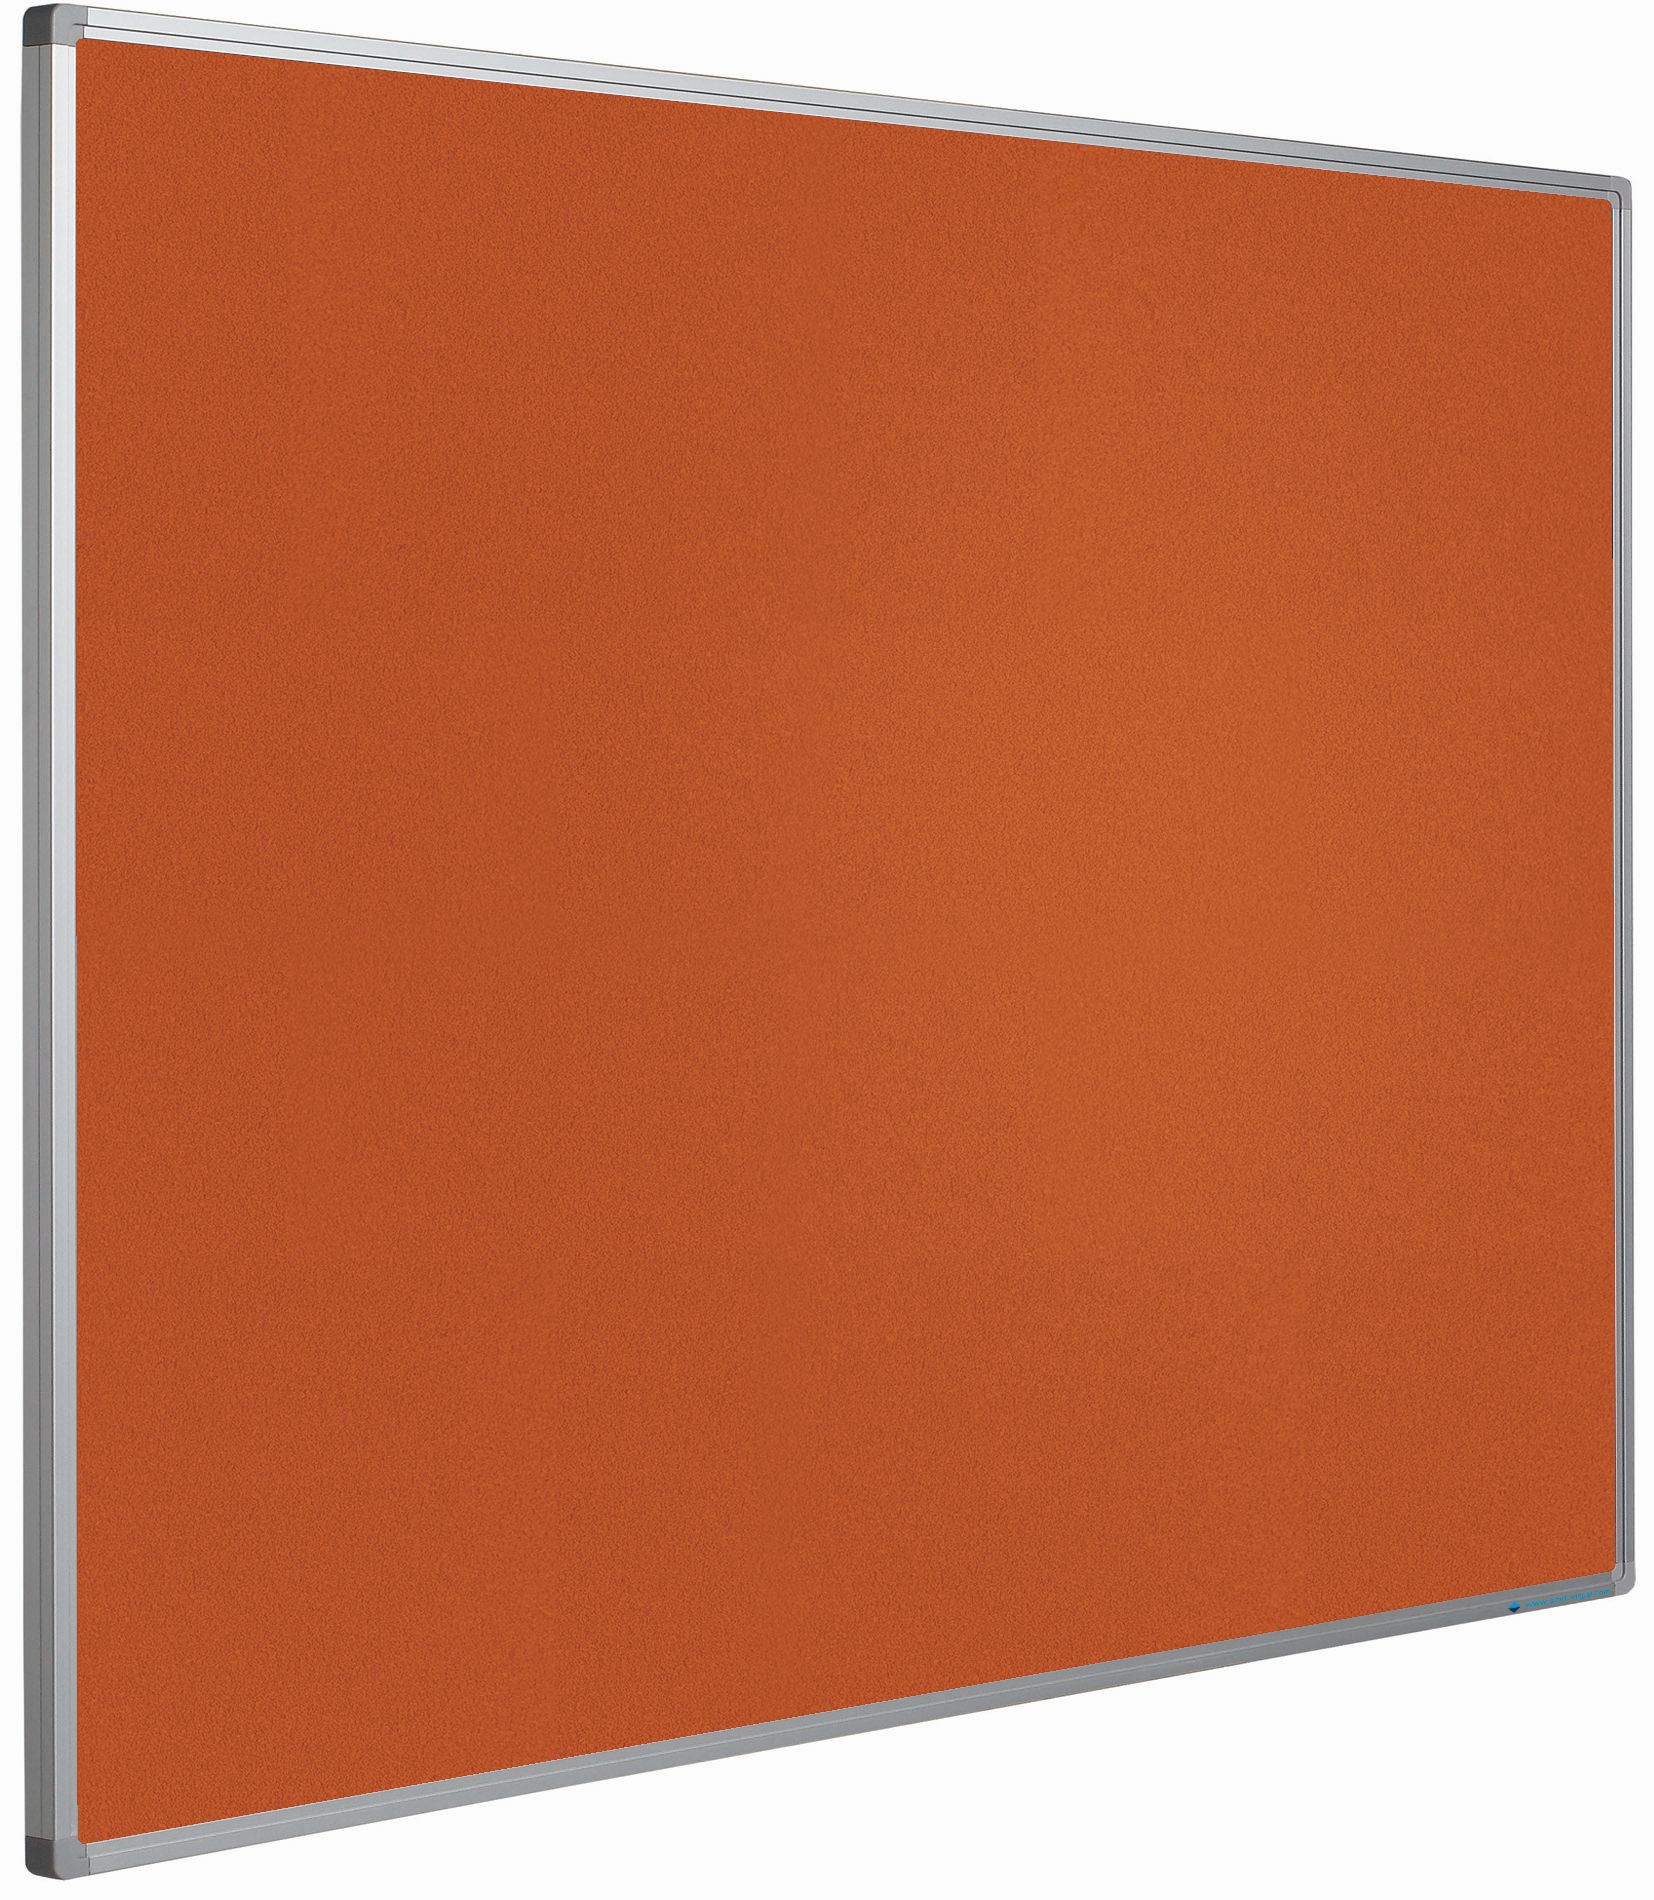 Prikbord Softline profiel 16mm, bulletin oranje - 45x60 cm